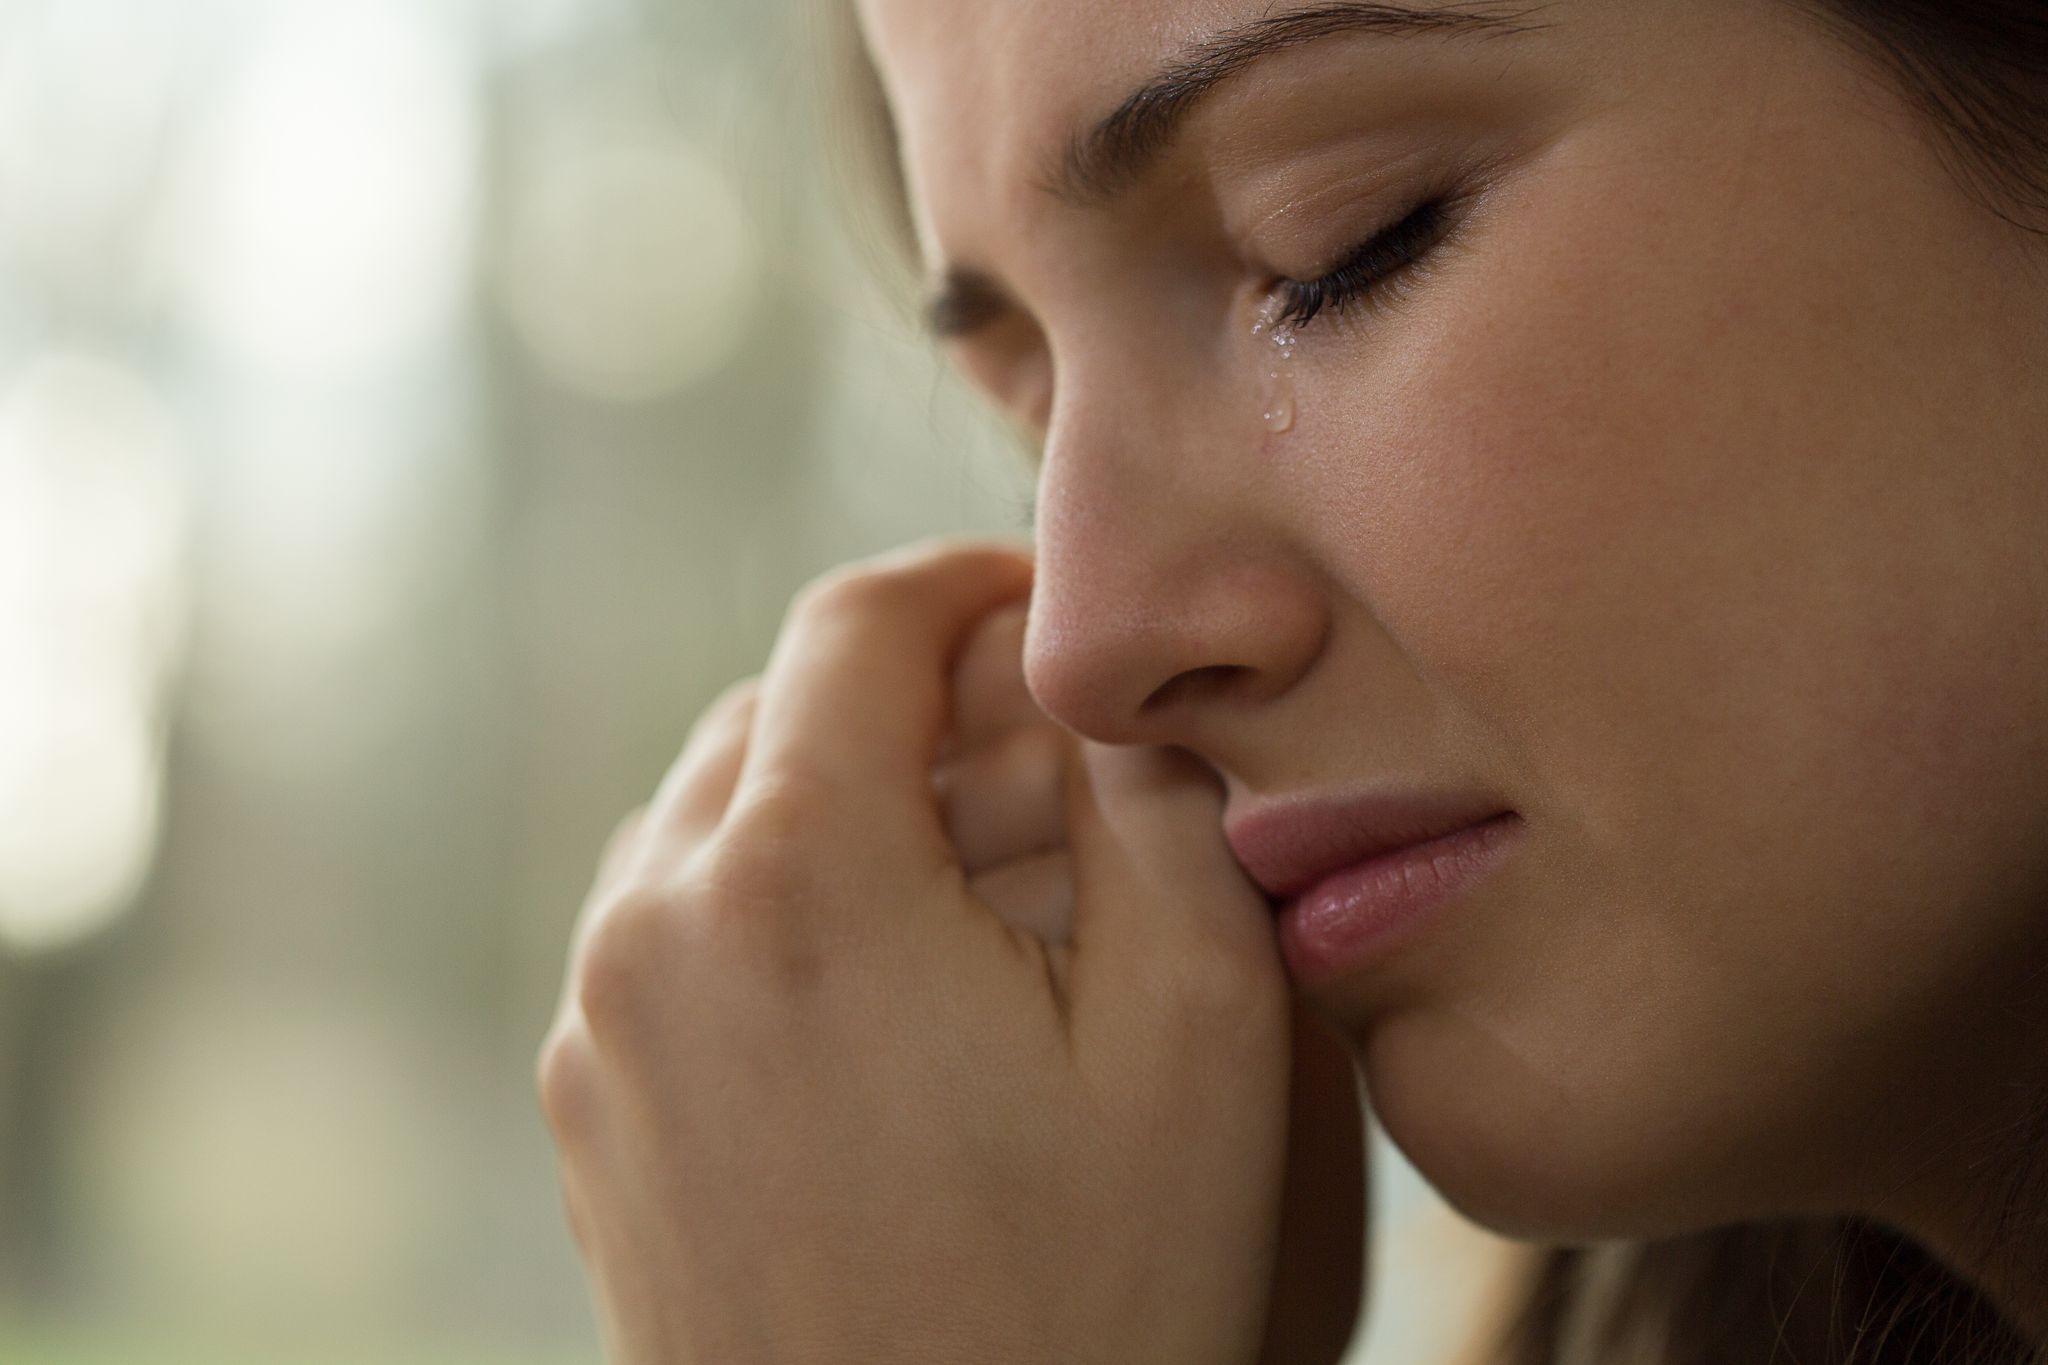 Eine weinende Frau. | Quelle: Shutterstock